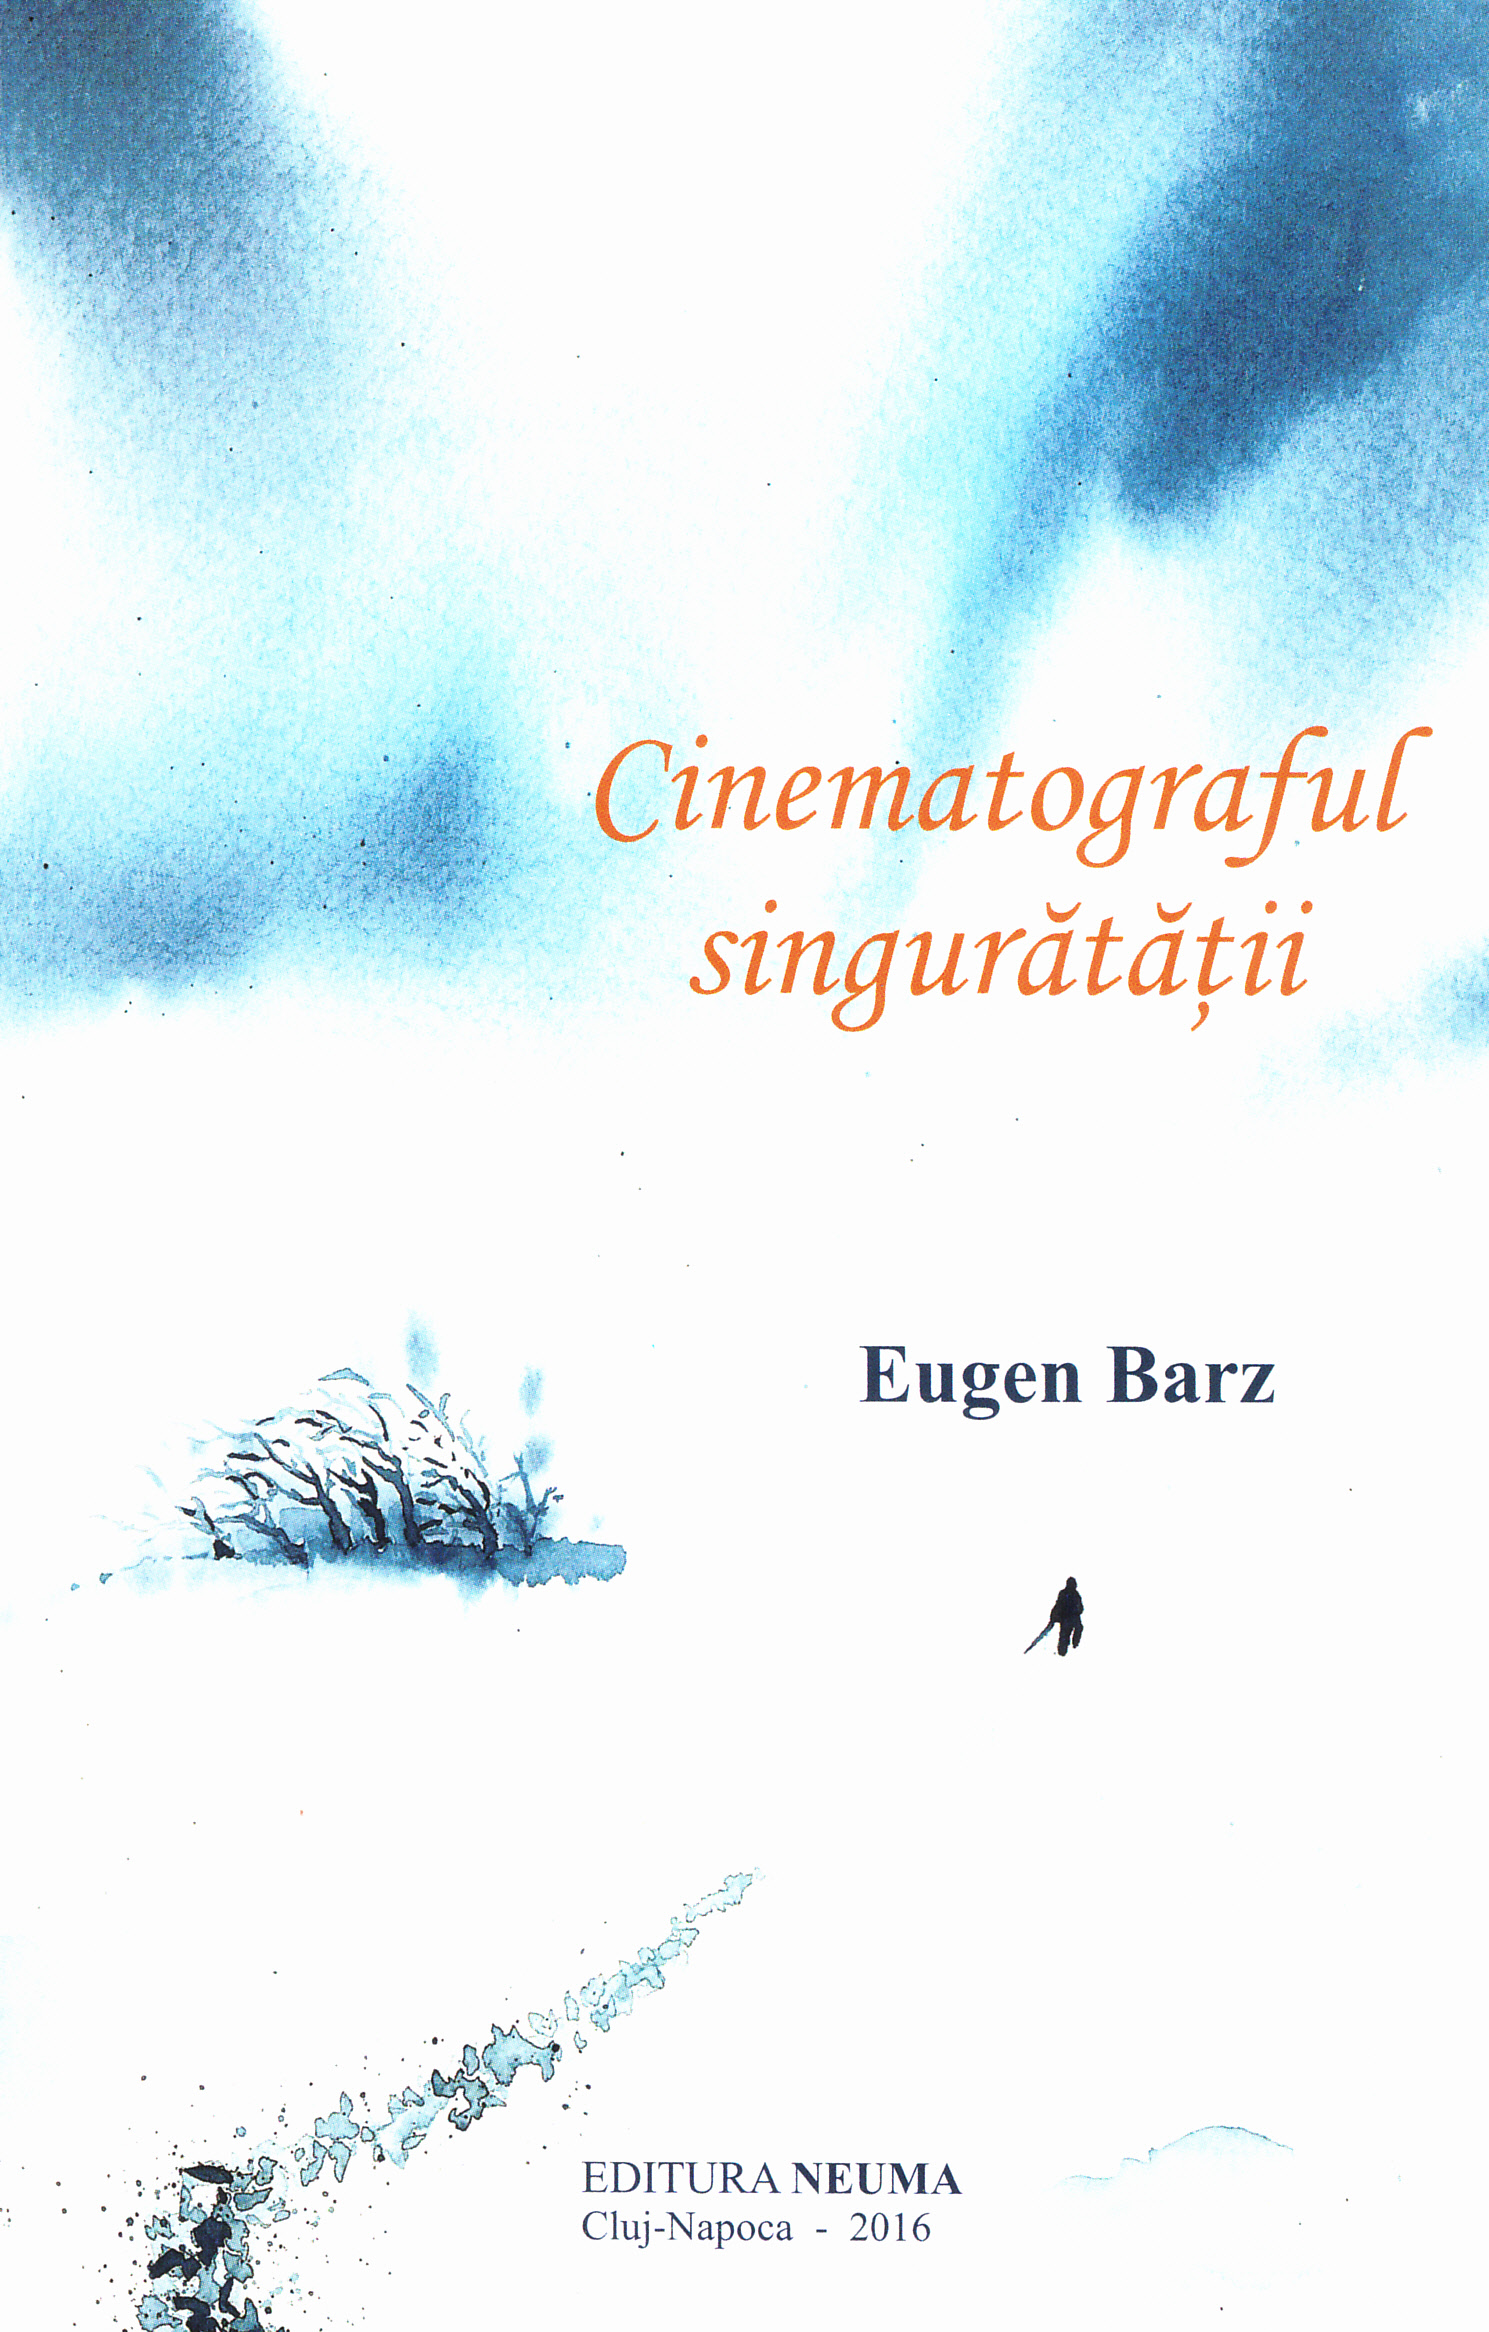 Cinematograful singuratatii - Eugen Barz